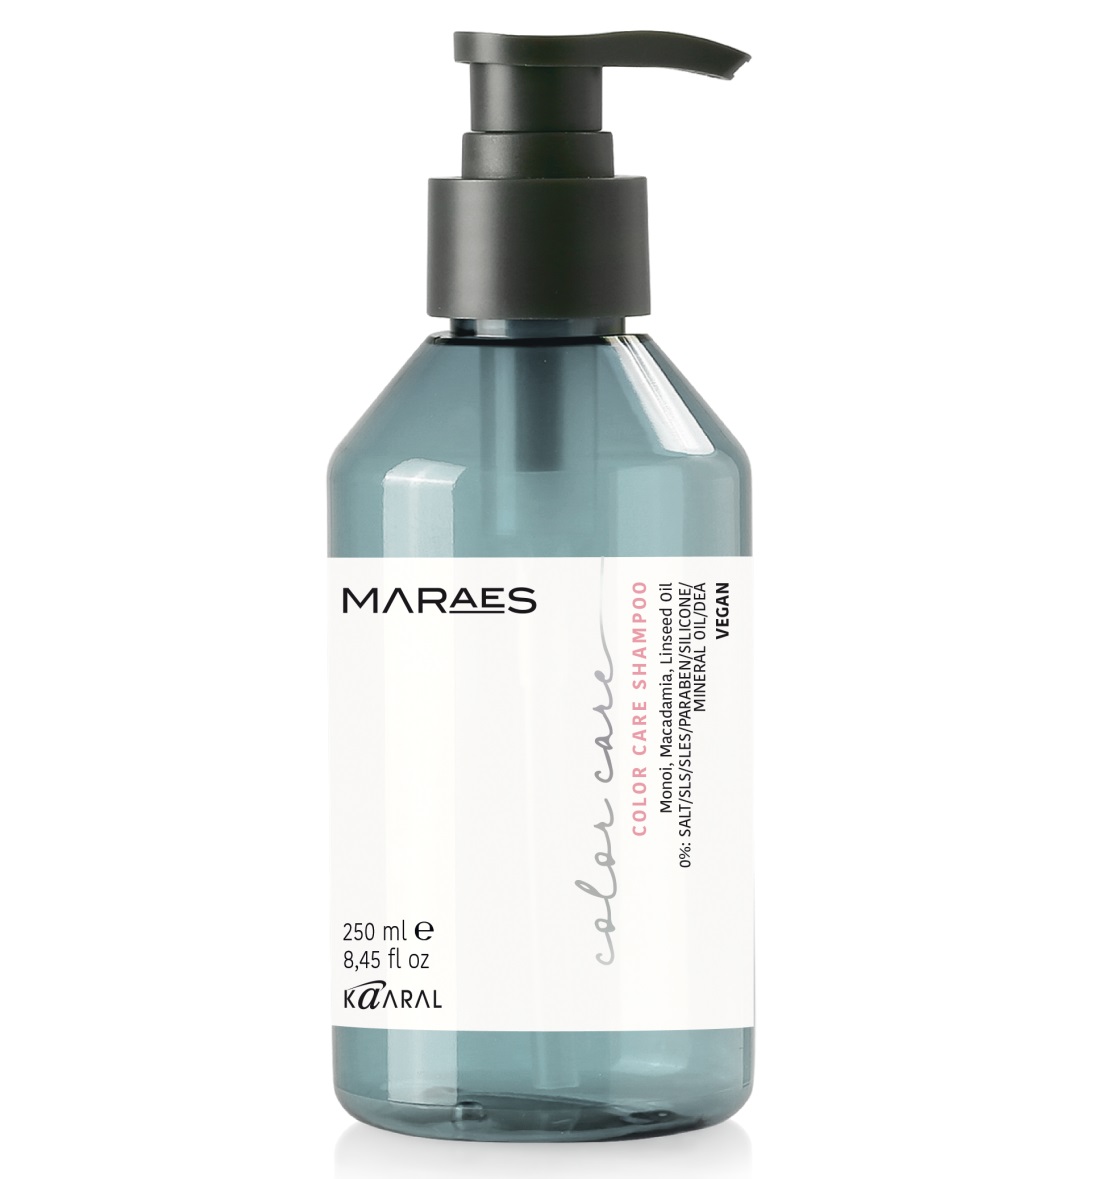 Kaaral Шампунь для окрашенных и химически обработанных волос Color Care Shampoo, 250 мл (Kaaral, Maraes) шампунь для окрашенных для волос kaaral maraes color care 250 мл